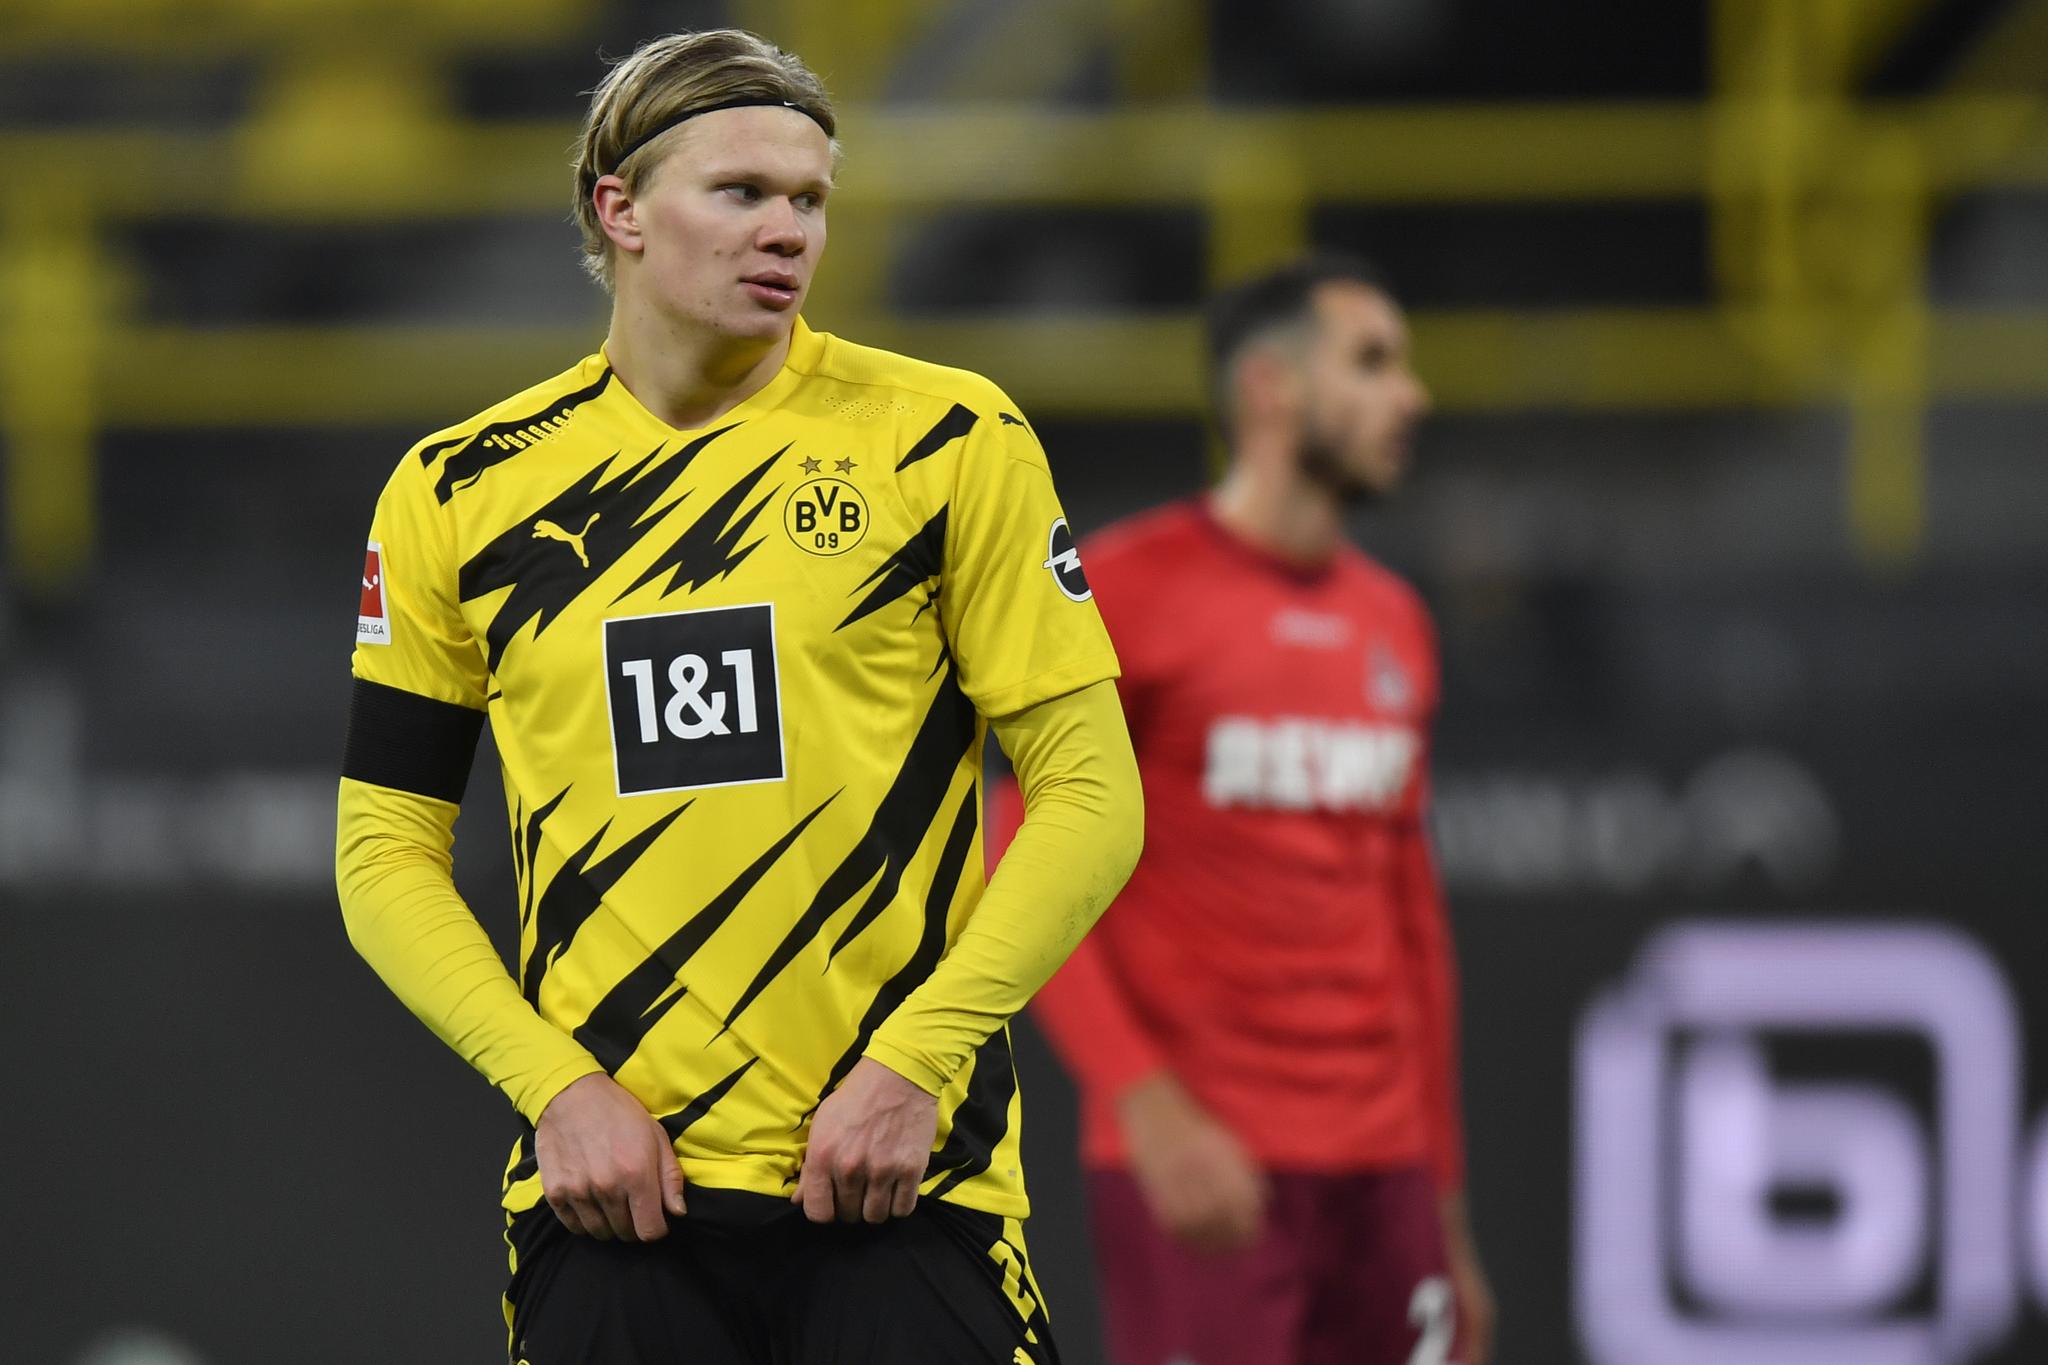 RÅDES TIL Å BLI: Erling Braut Haaland rådes til å bli værende i Borussia Dortmund. Her fra en kamp mot Köln i november 2020. 